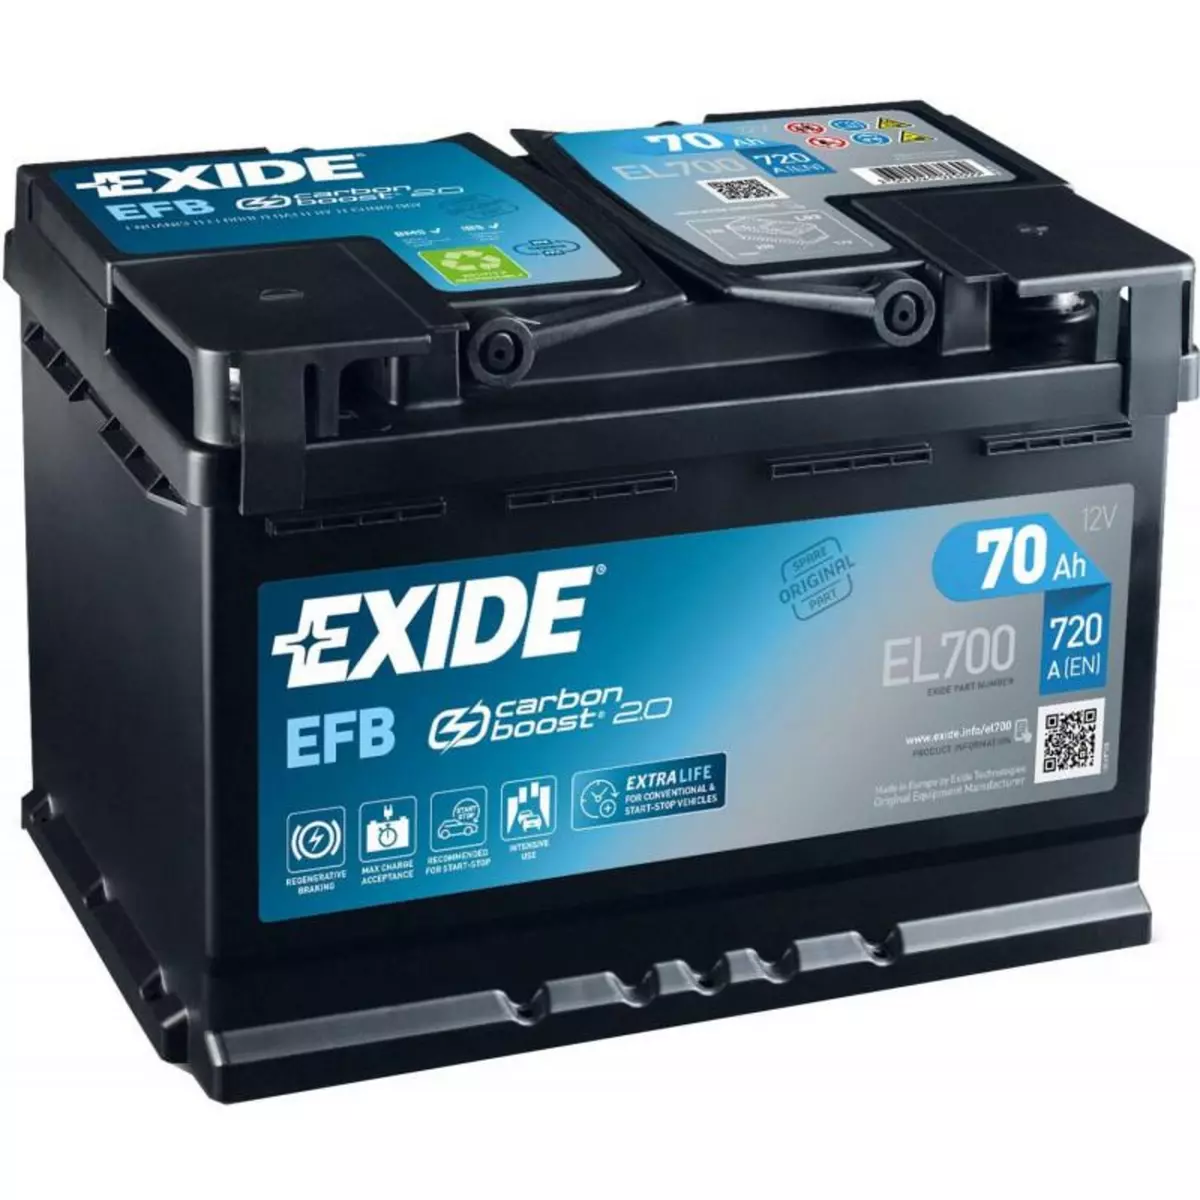 EXIDE Batterie EXIDE EFB Start And Stop EL700 12V 70ah 760A L3D